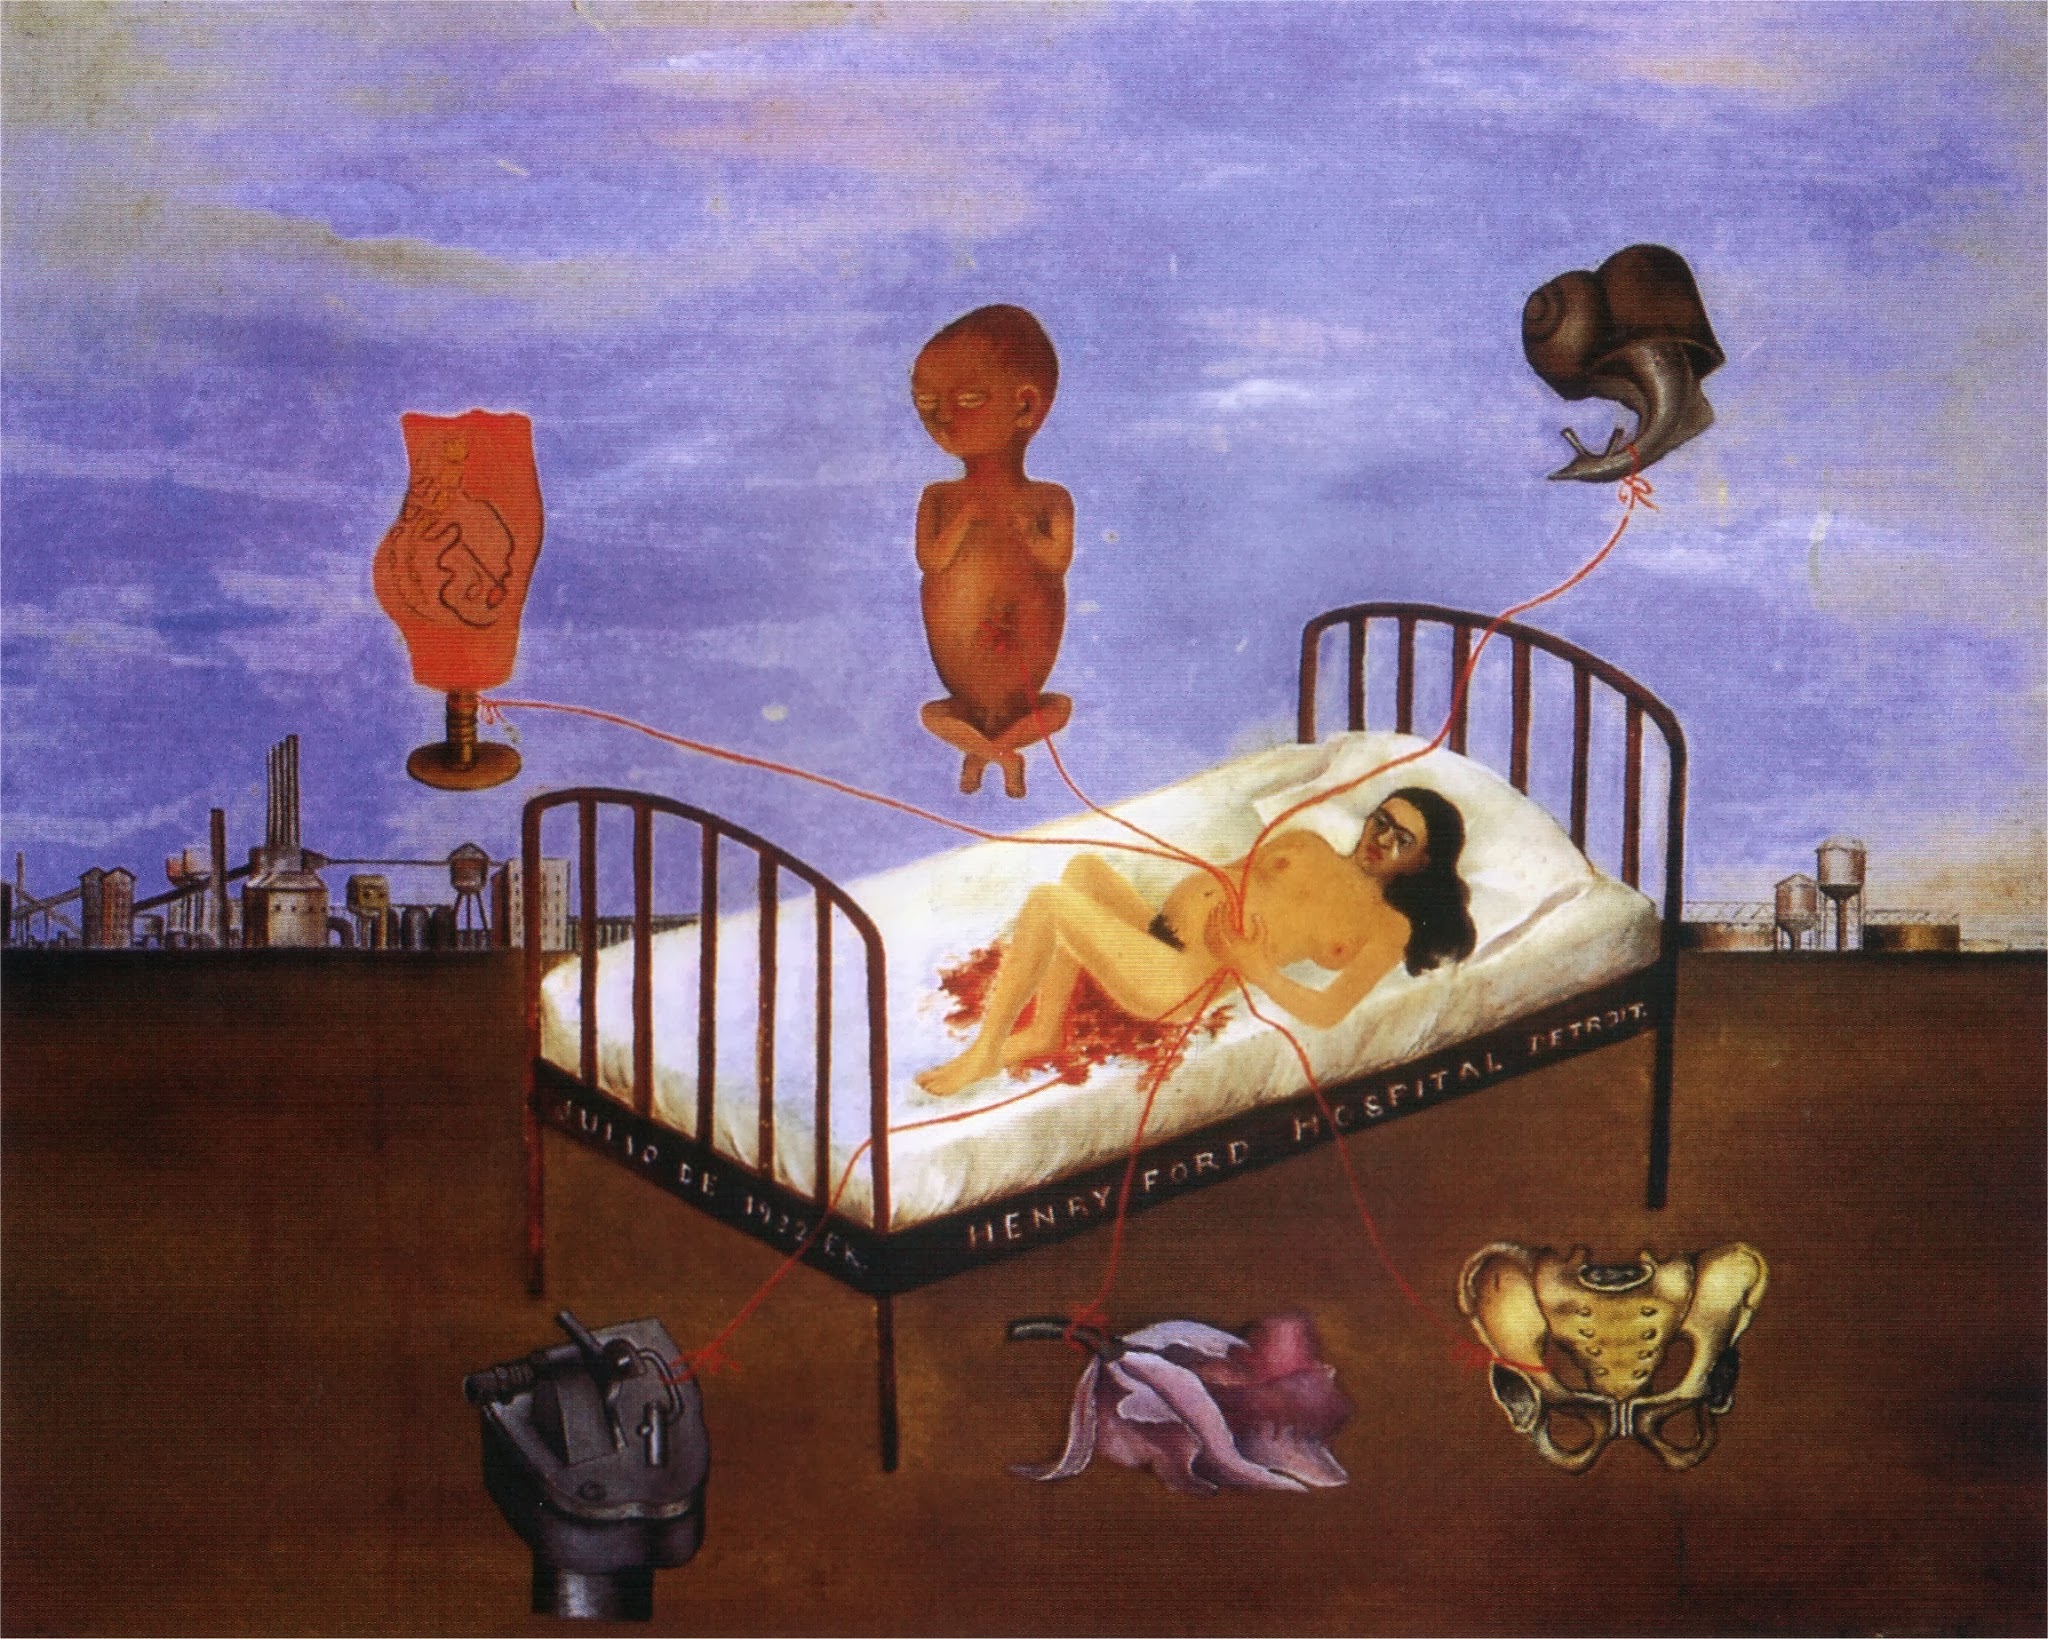 Frida kahlo henry ford hospital 1932 painting #3